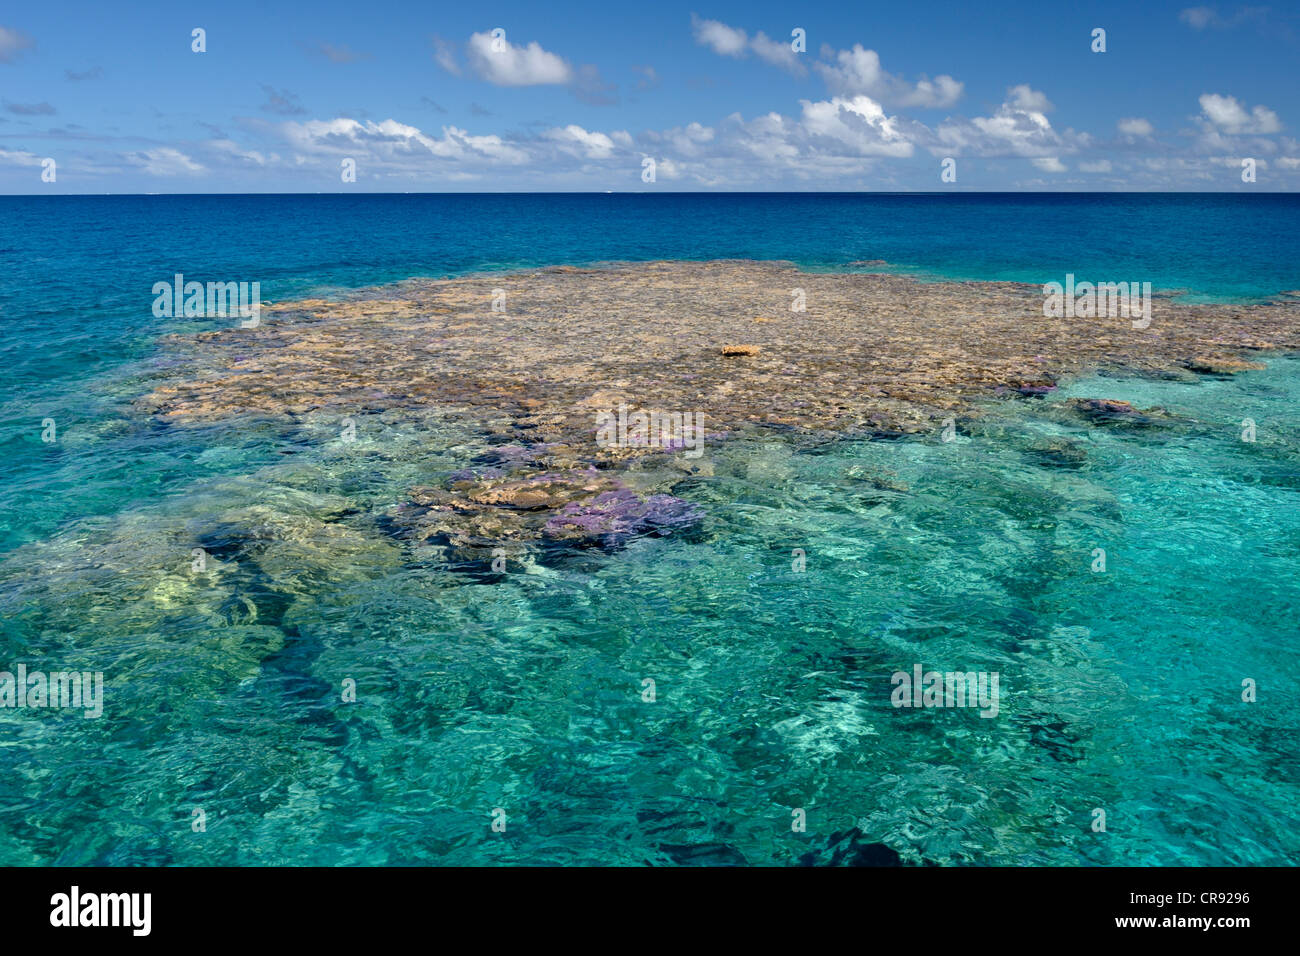 Têtes de corail, avec le soleil les frais généraux, dans l'ATOLL DE MAKEMO. Tuamotu, Polynésie française. Photographiés avec un filtre polarisant (polarisation). Banque D'Images